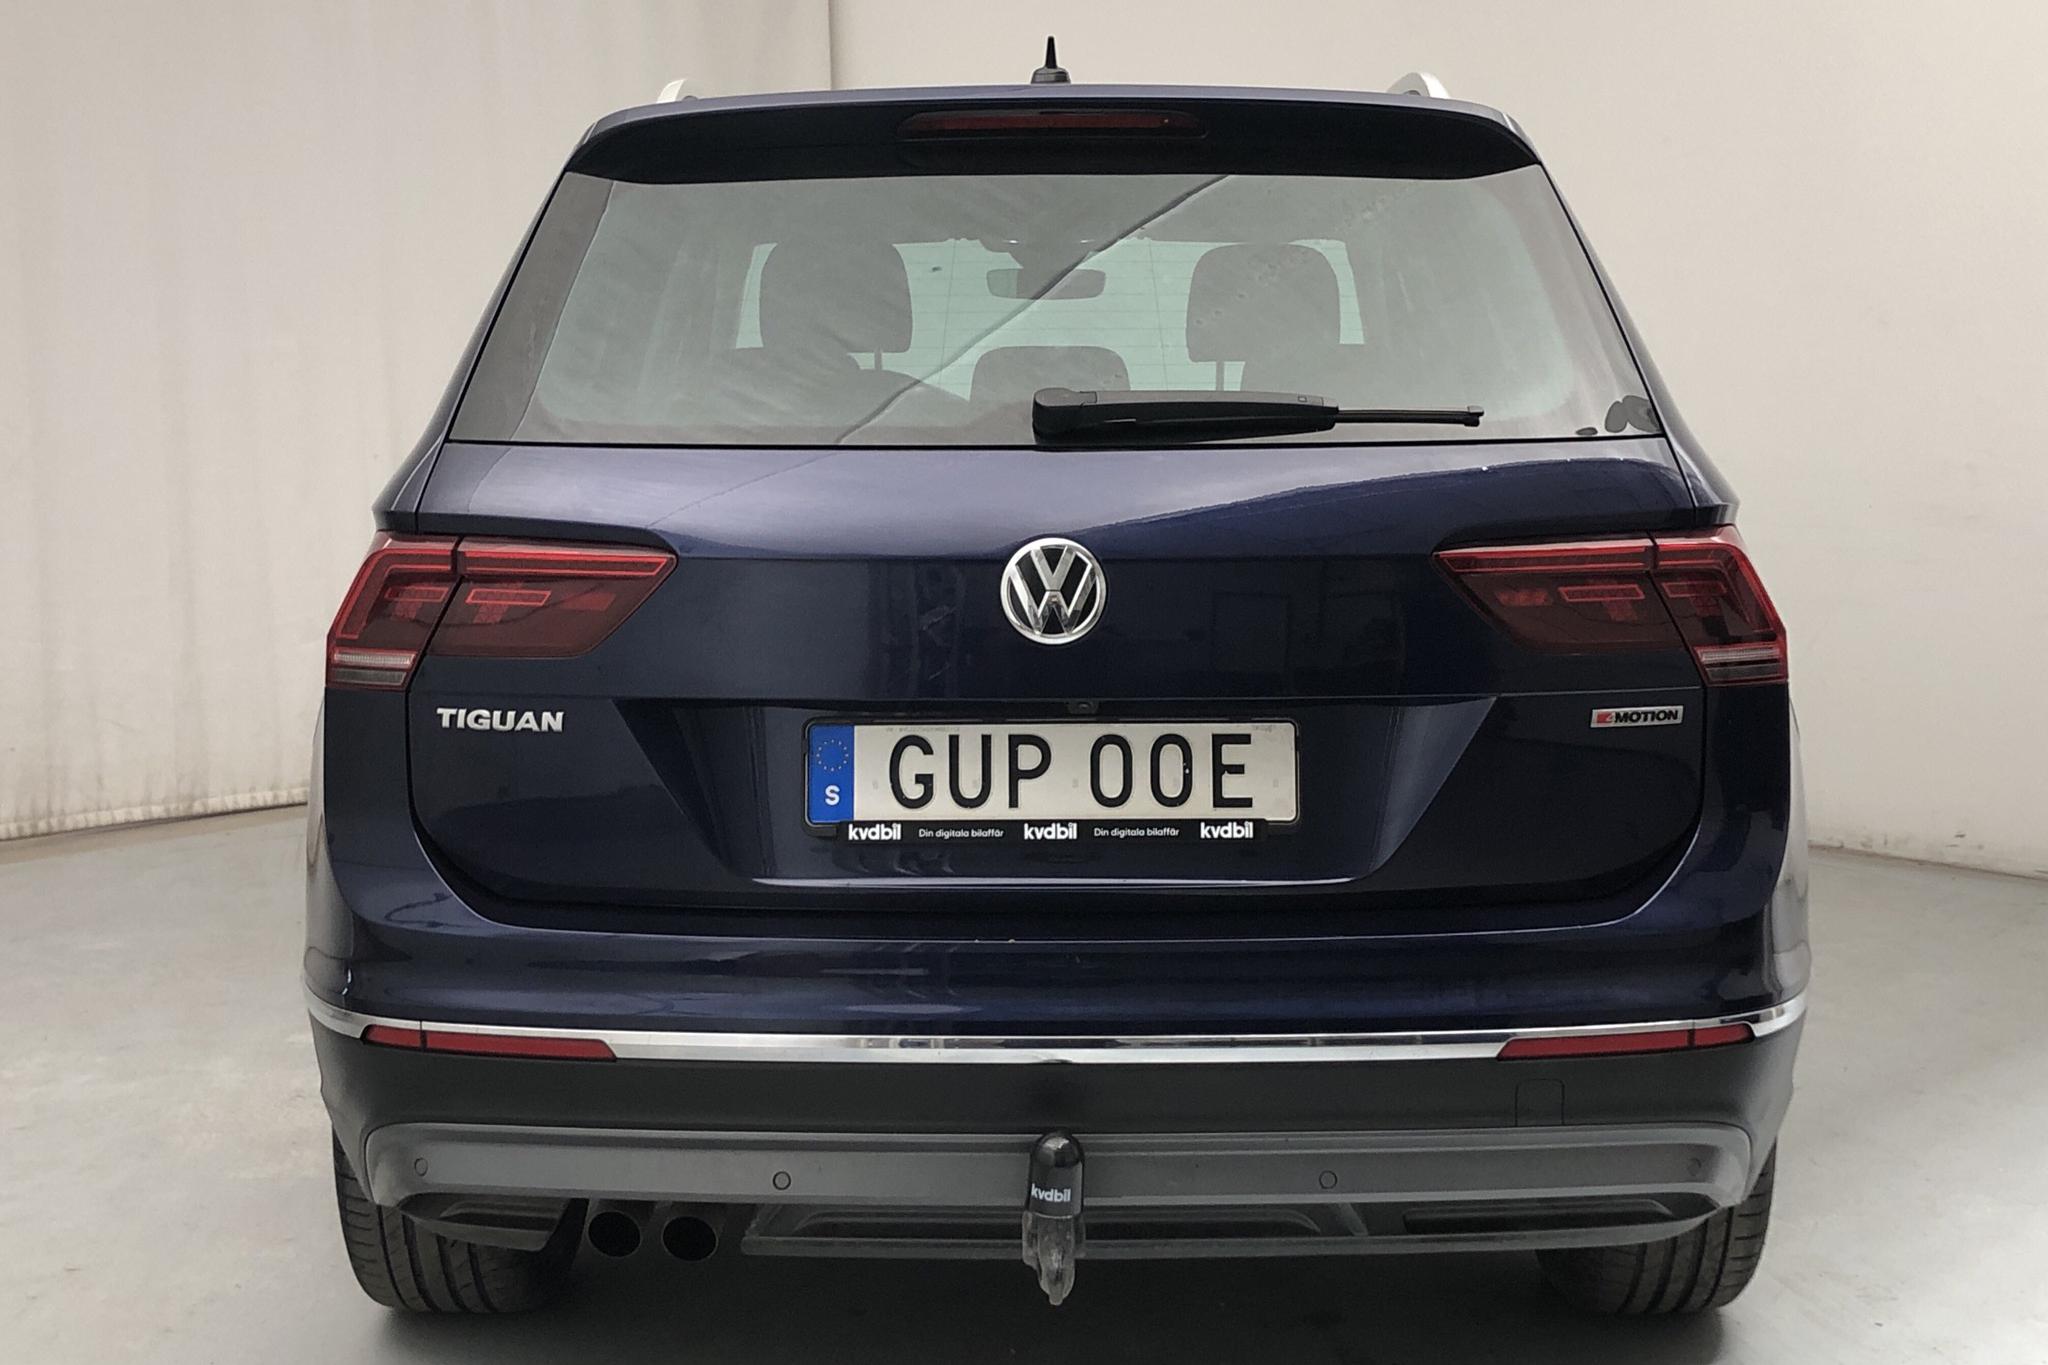 VW Tiguan 2.0 TDI 4MOTION (190hk) - 4 390 mil - Automat - blå - 2019